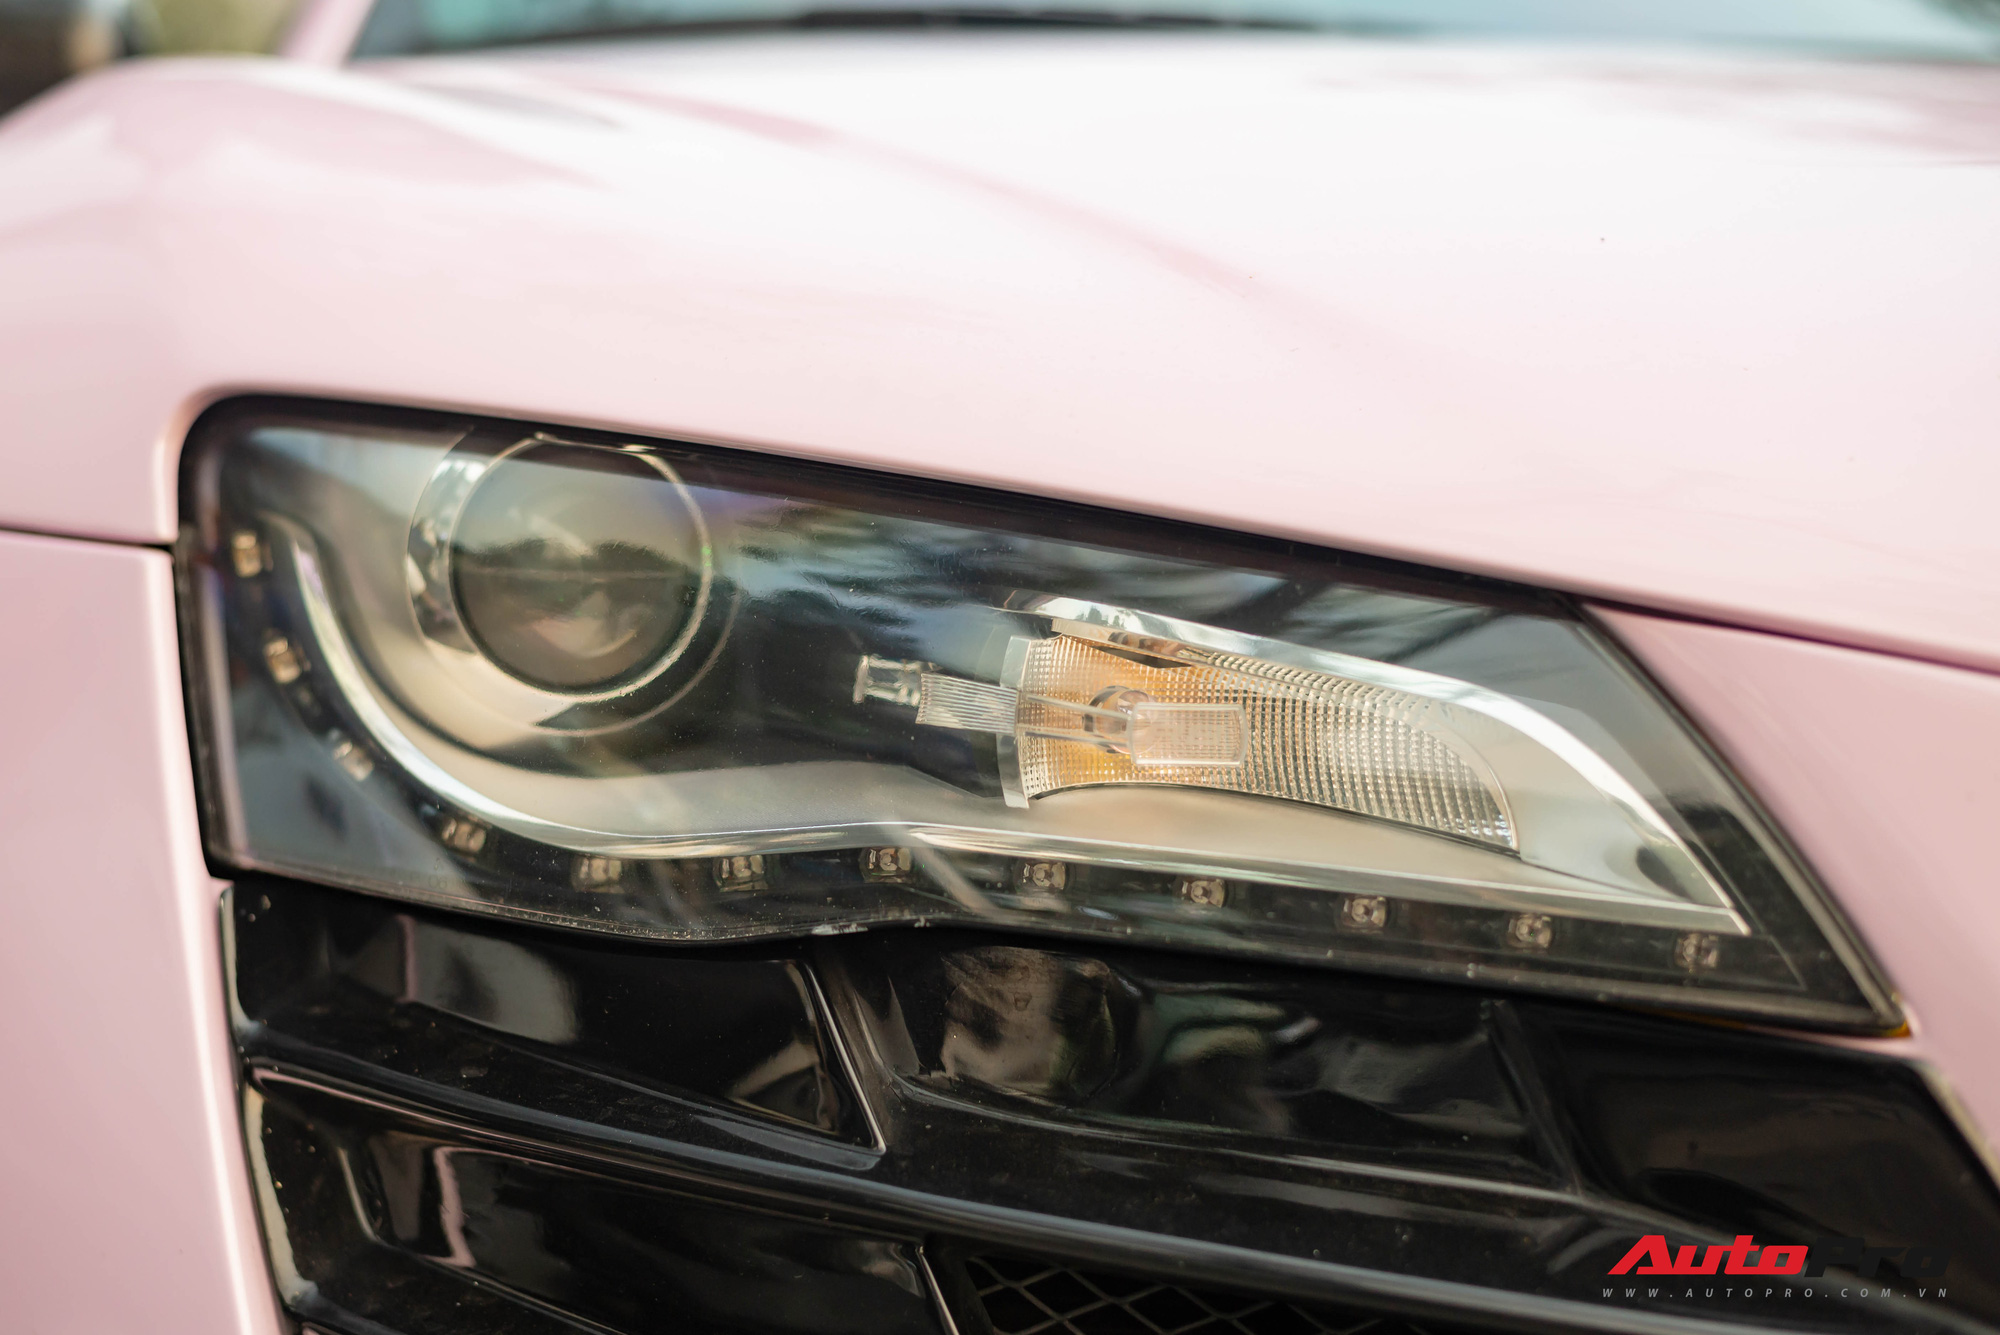 Audi R8 độ cực độc của đại gia Hà Thành trở nên nữ tính hơn nhờ chi tiết này - Ảnh 3.